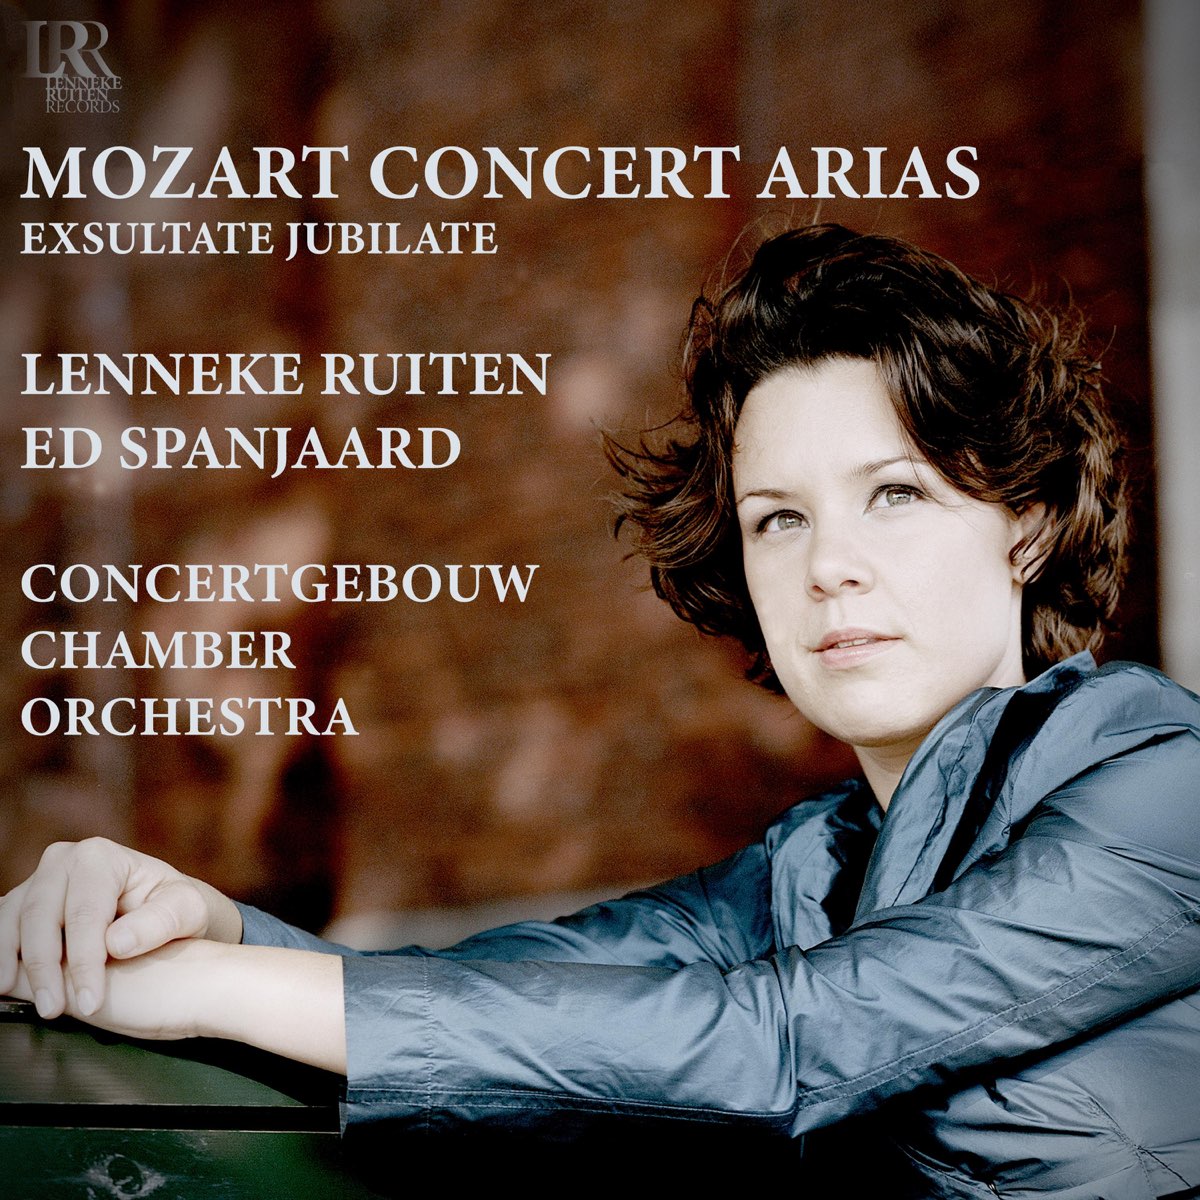 ‎Mozart Concert Arias by Lenneke Ruiten & Ed Spanjaard on Apple Music